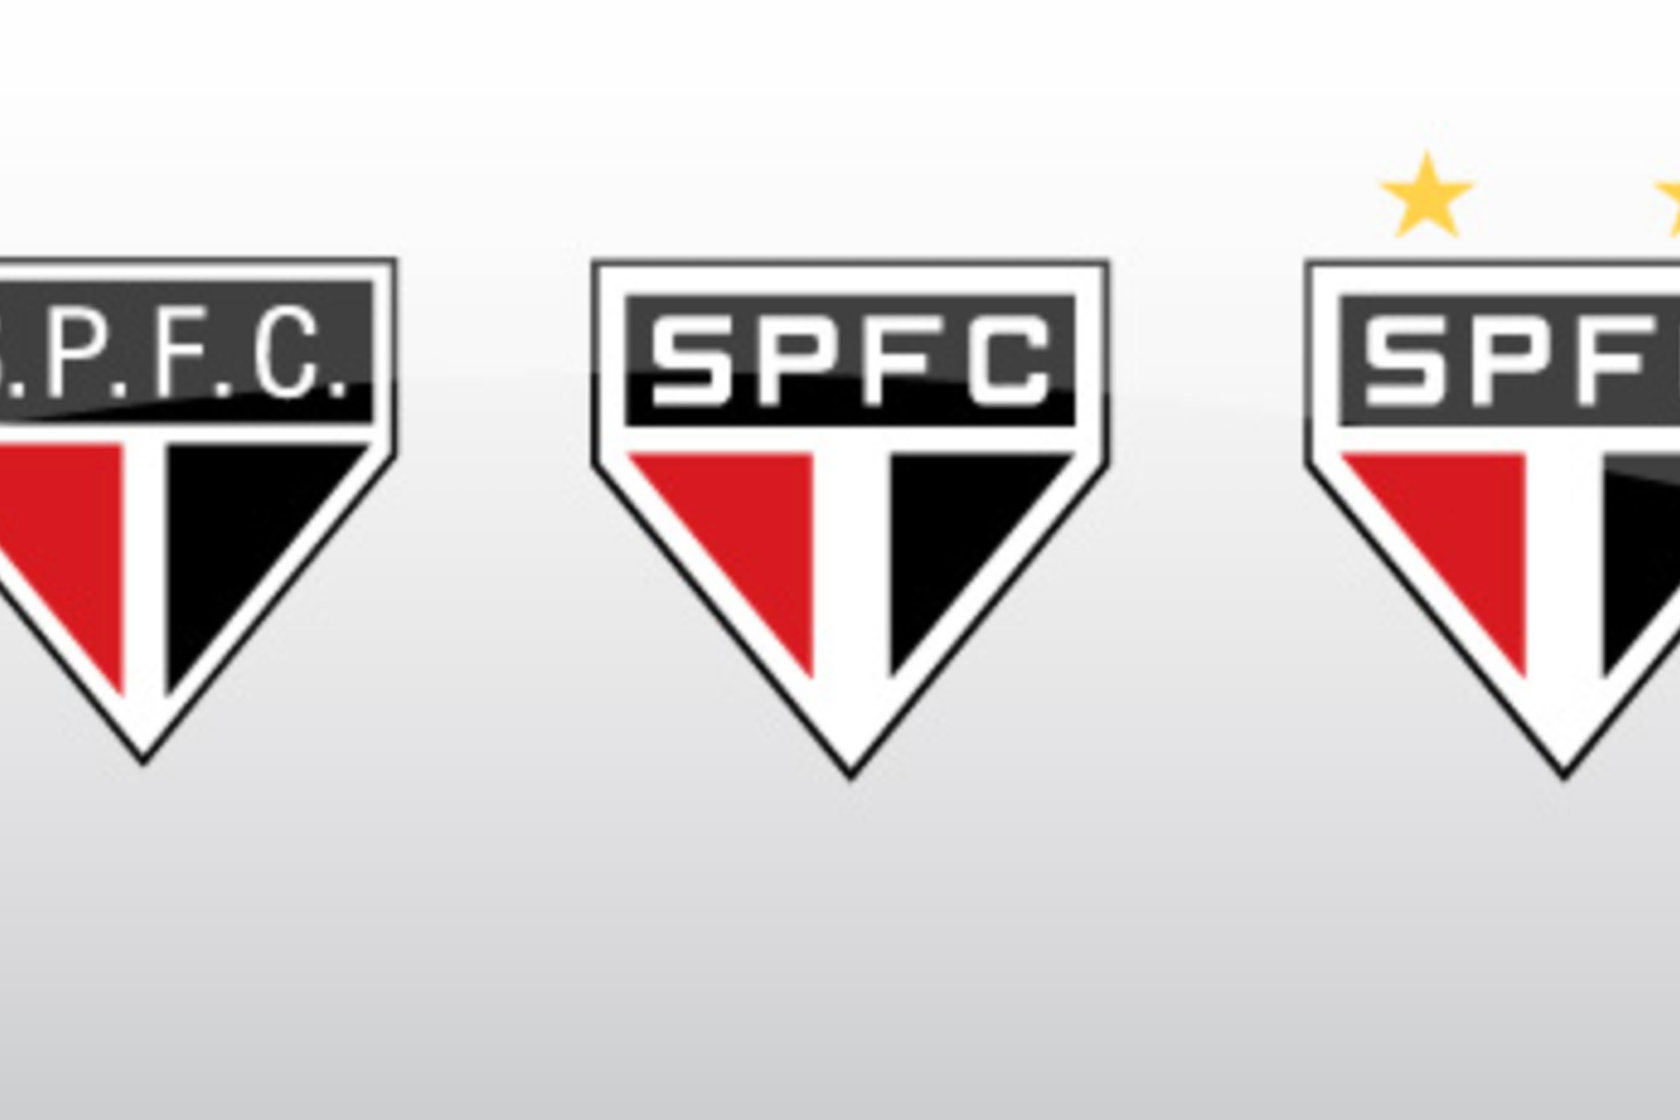 Escudos de Clubes Brasileiros de Futebol #1